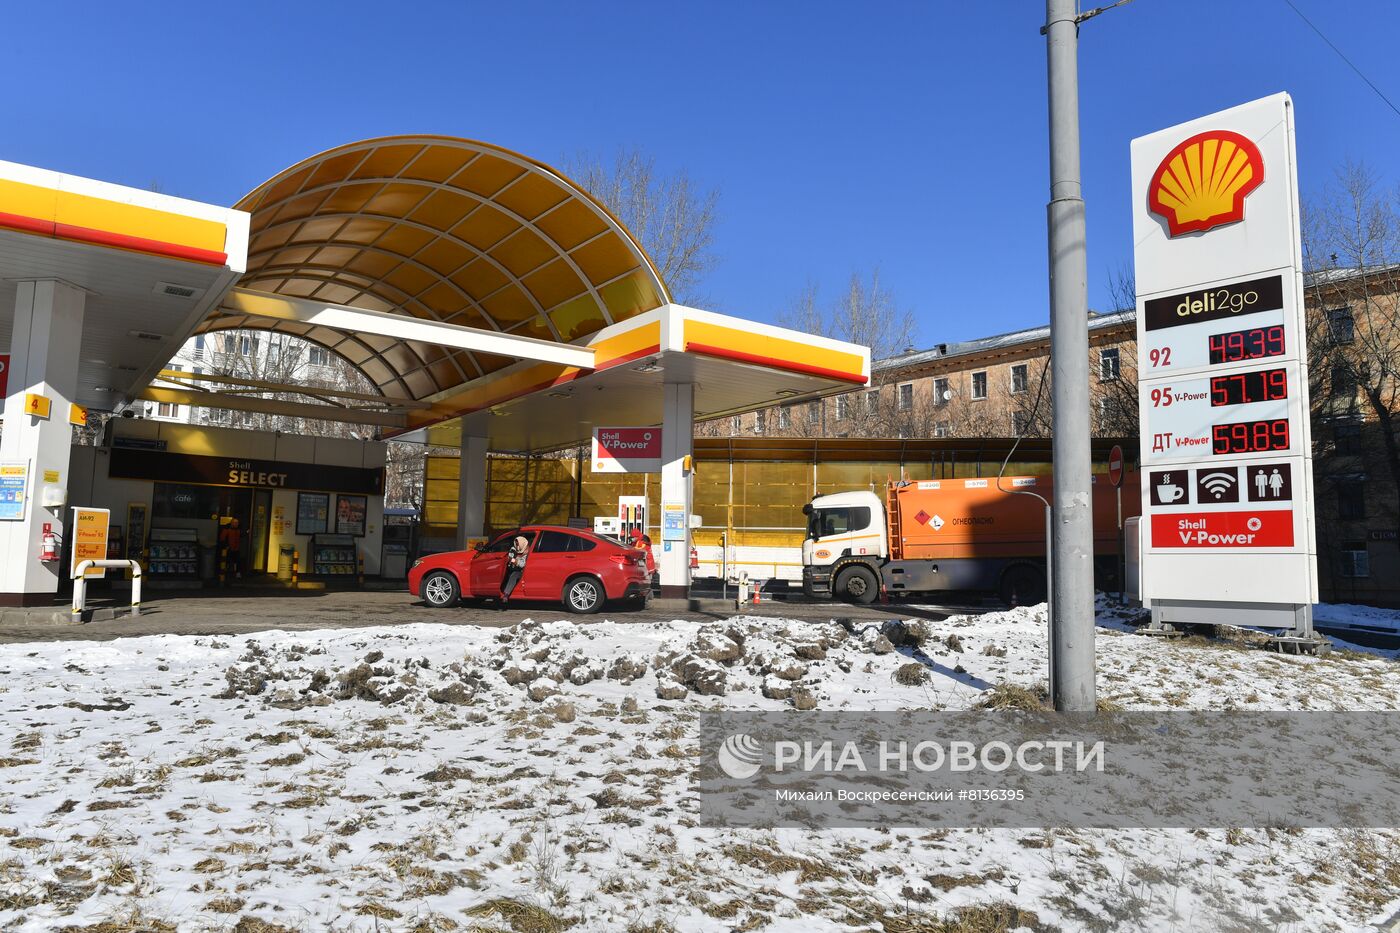 Shell объявила о закрытии заправок в России 